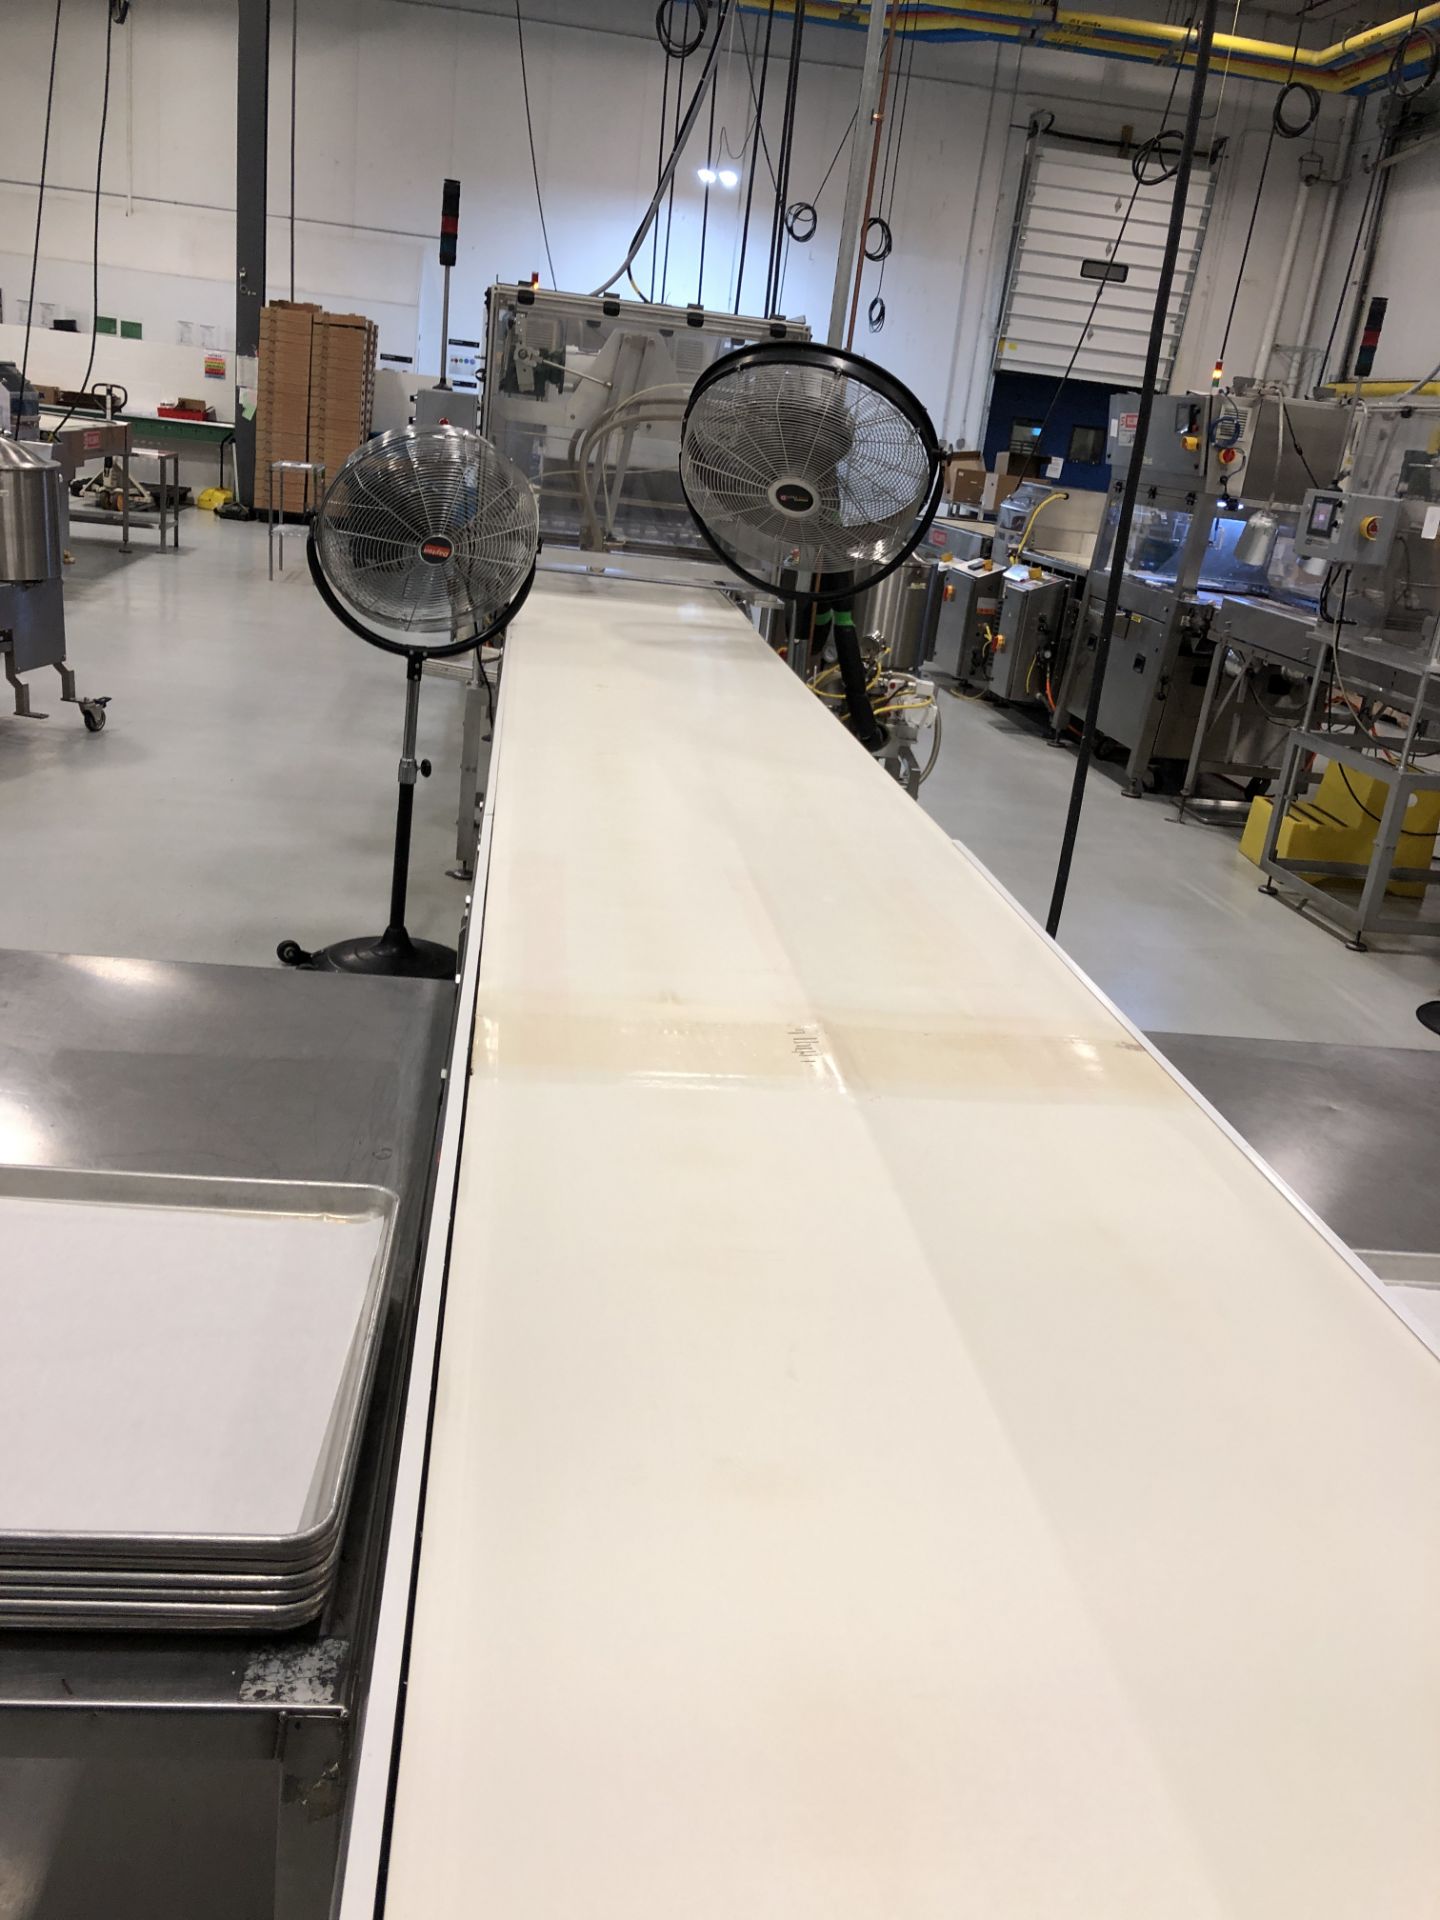 Dorner 27" wide x 26-ft long Ambient Cooling Conveyor - Image 2 of 4